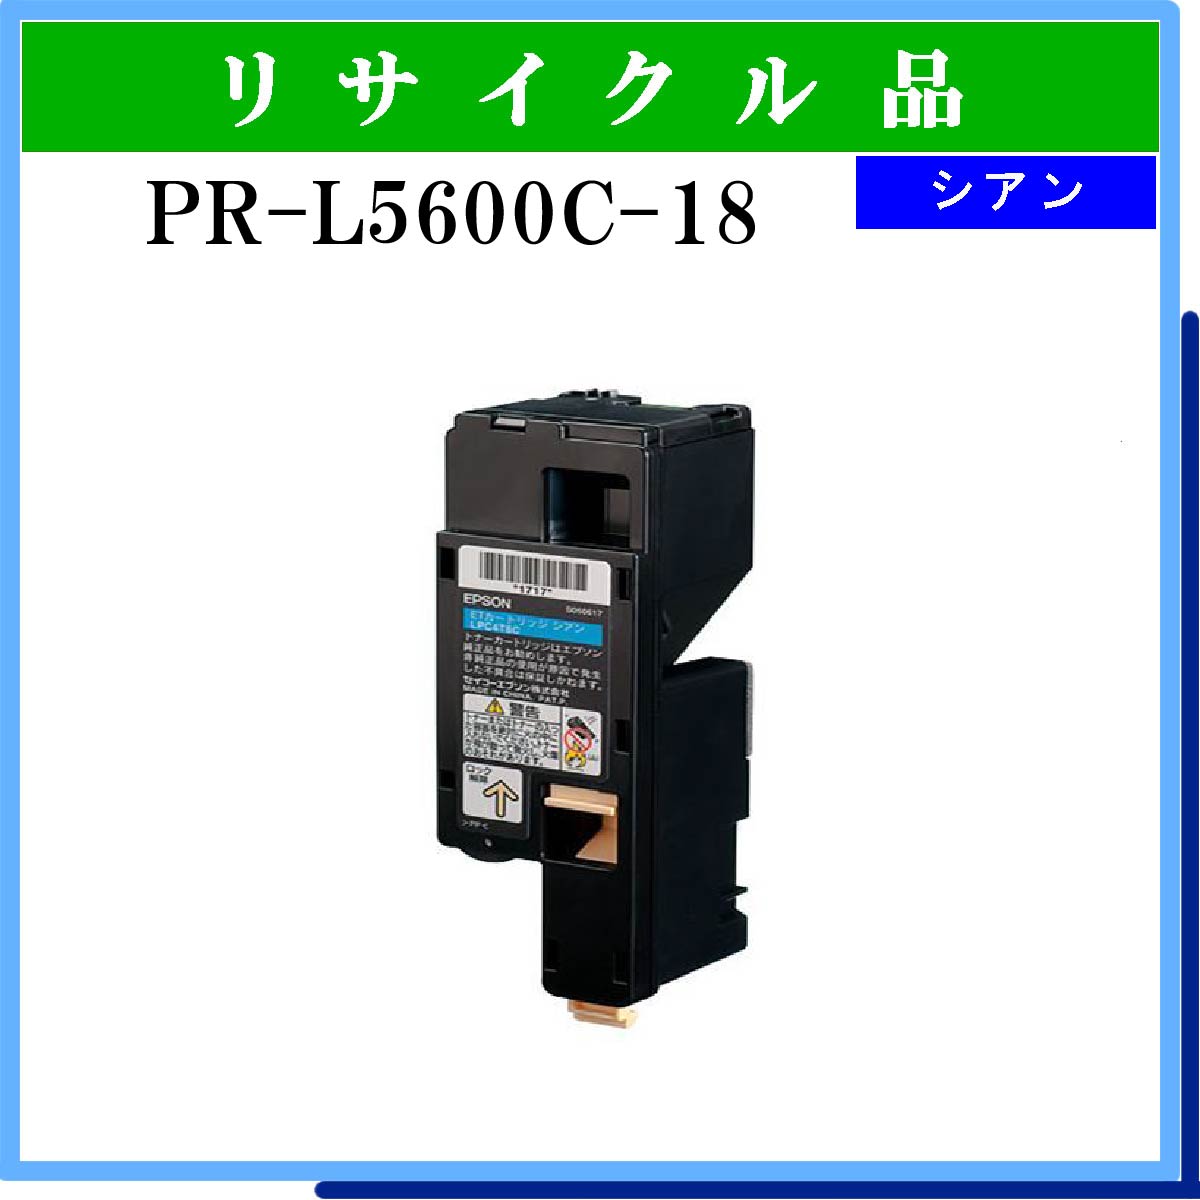 PR-L5600C-18